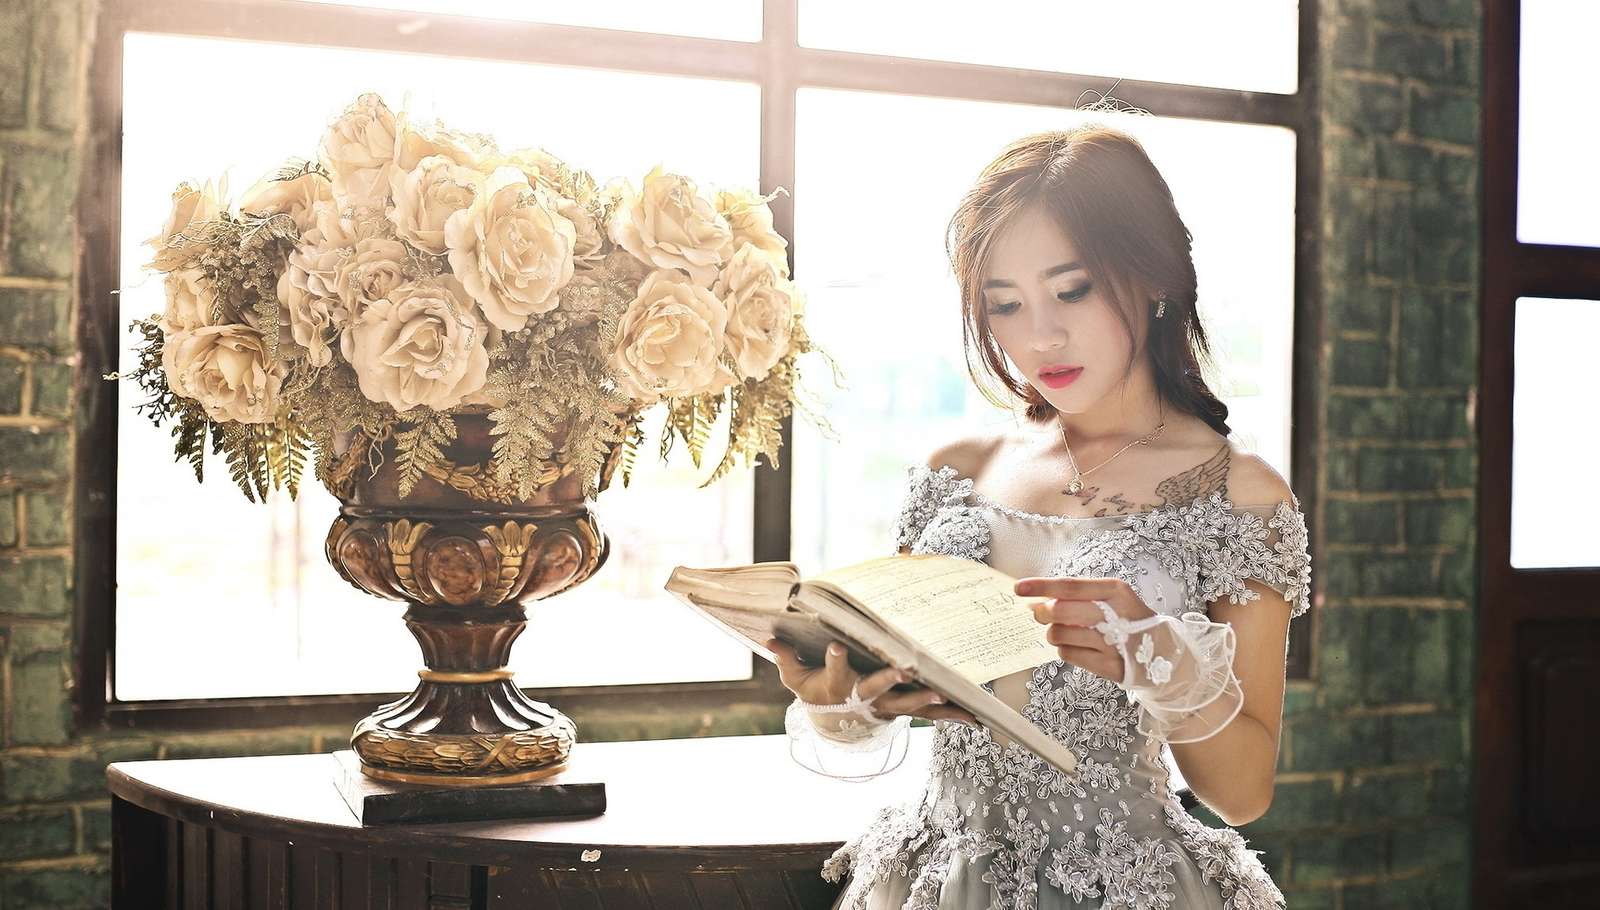 Γυναίκα με ένα βιβλίο δίπλα σε τριαντάφυλλα σε ένα βάζο δίπλα στο παράθυρο παζλ online